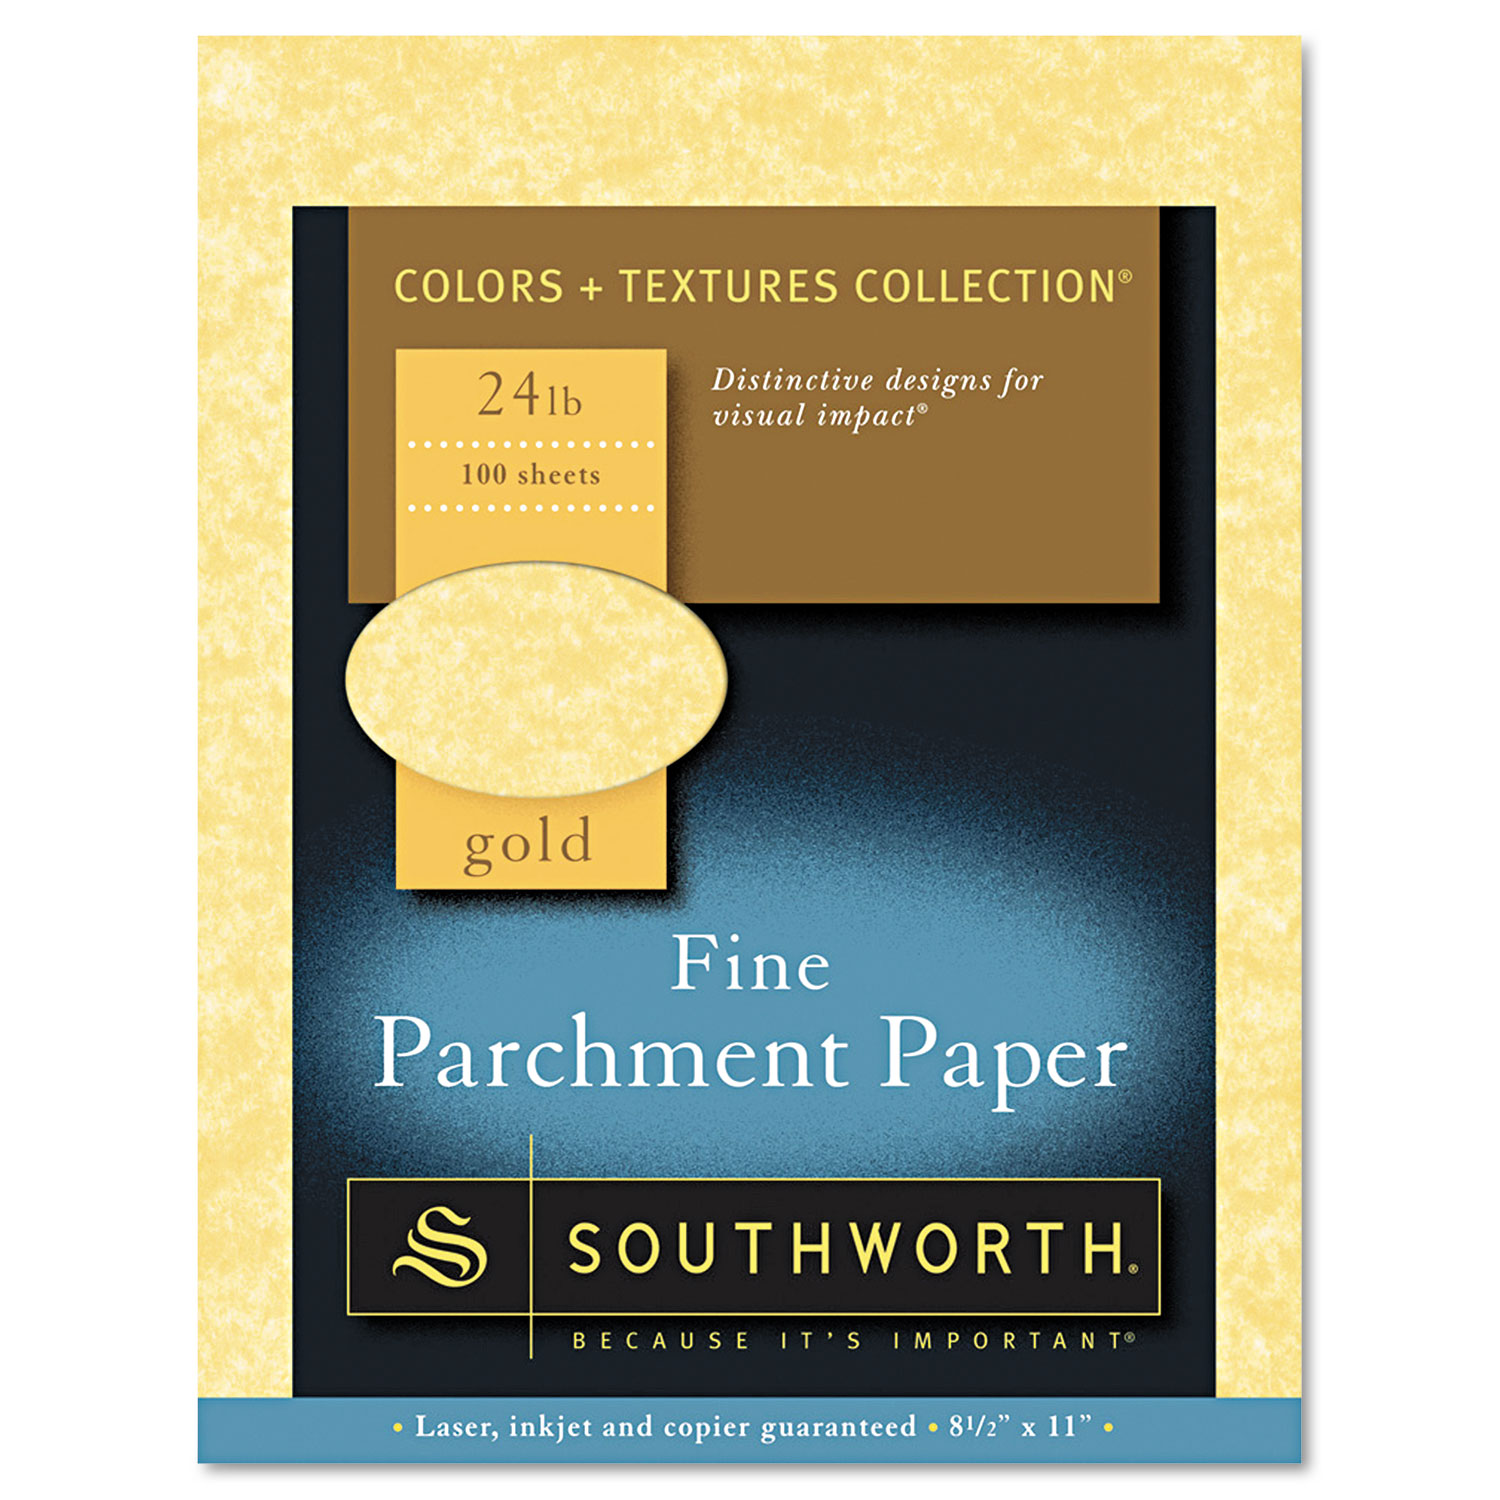 Southworth Parchment Ivory 24 lb Paper 100 Sheets